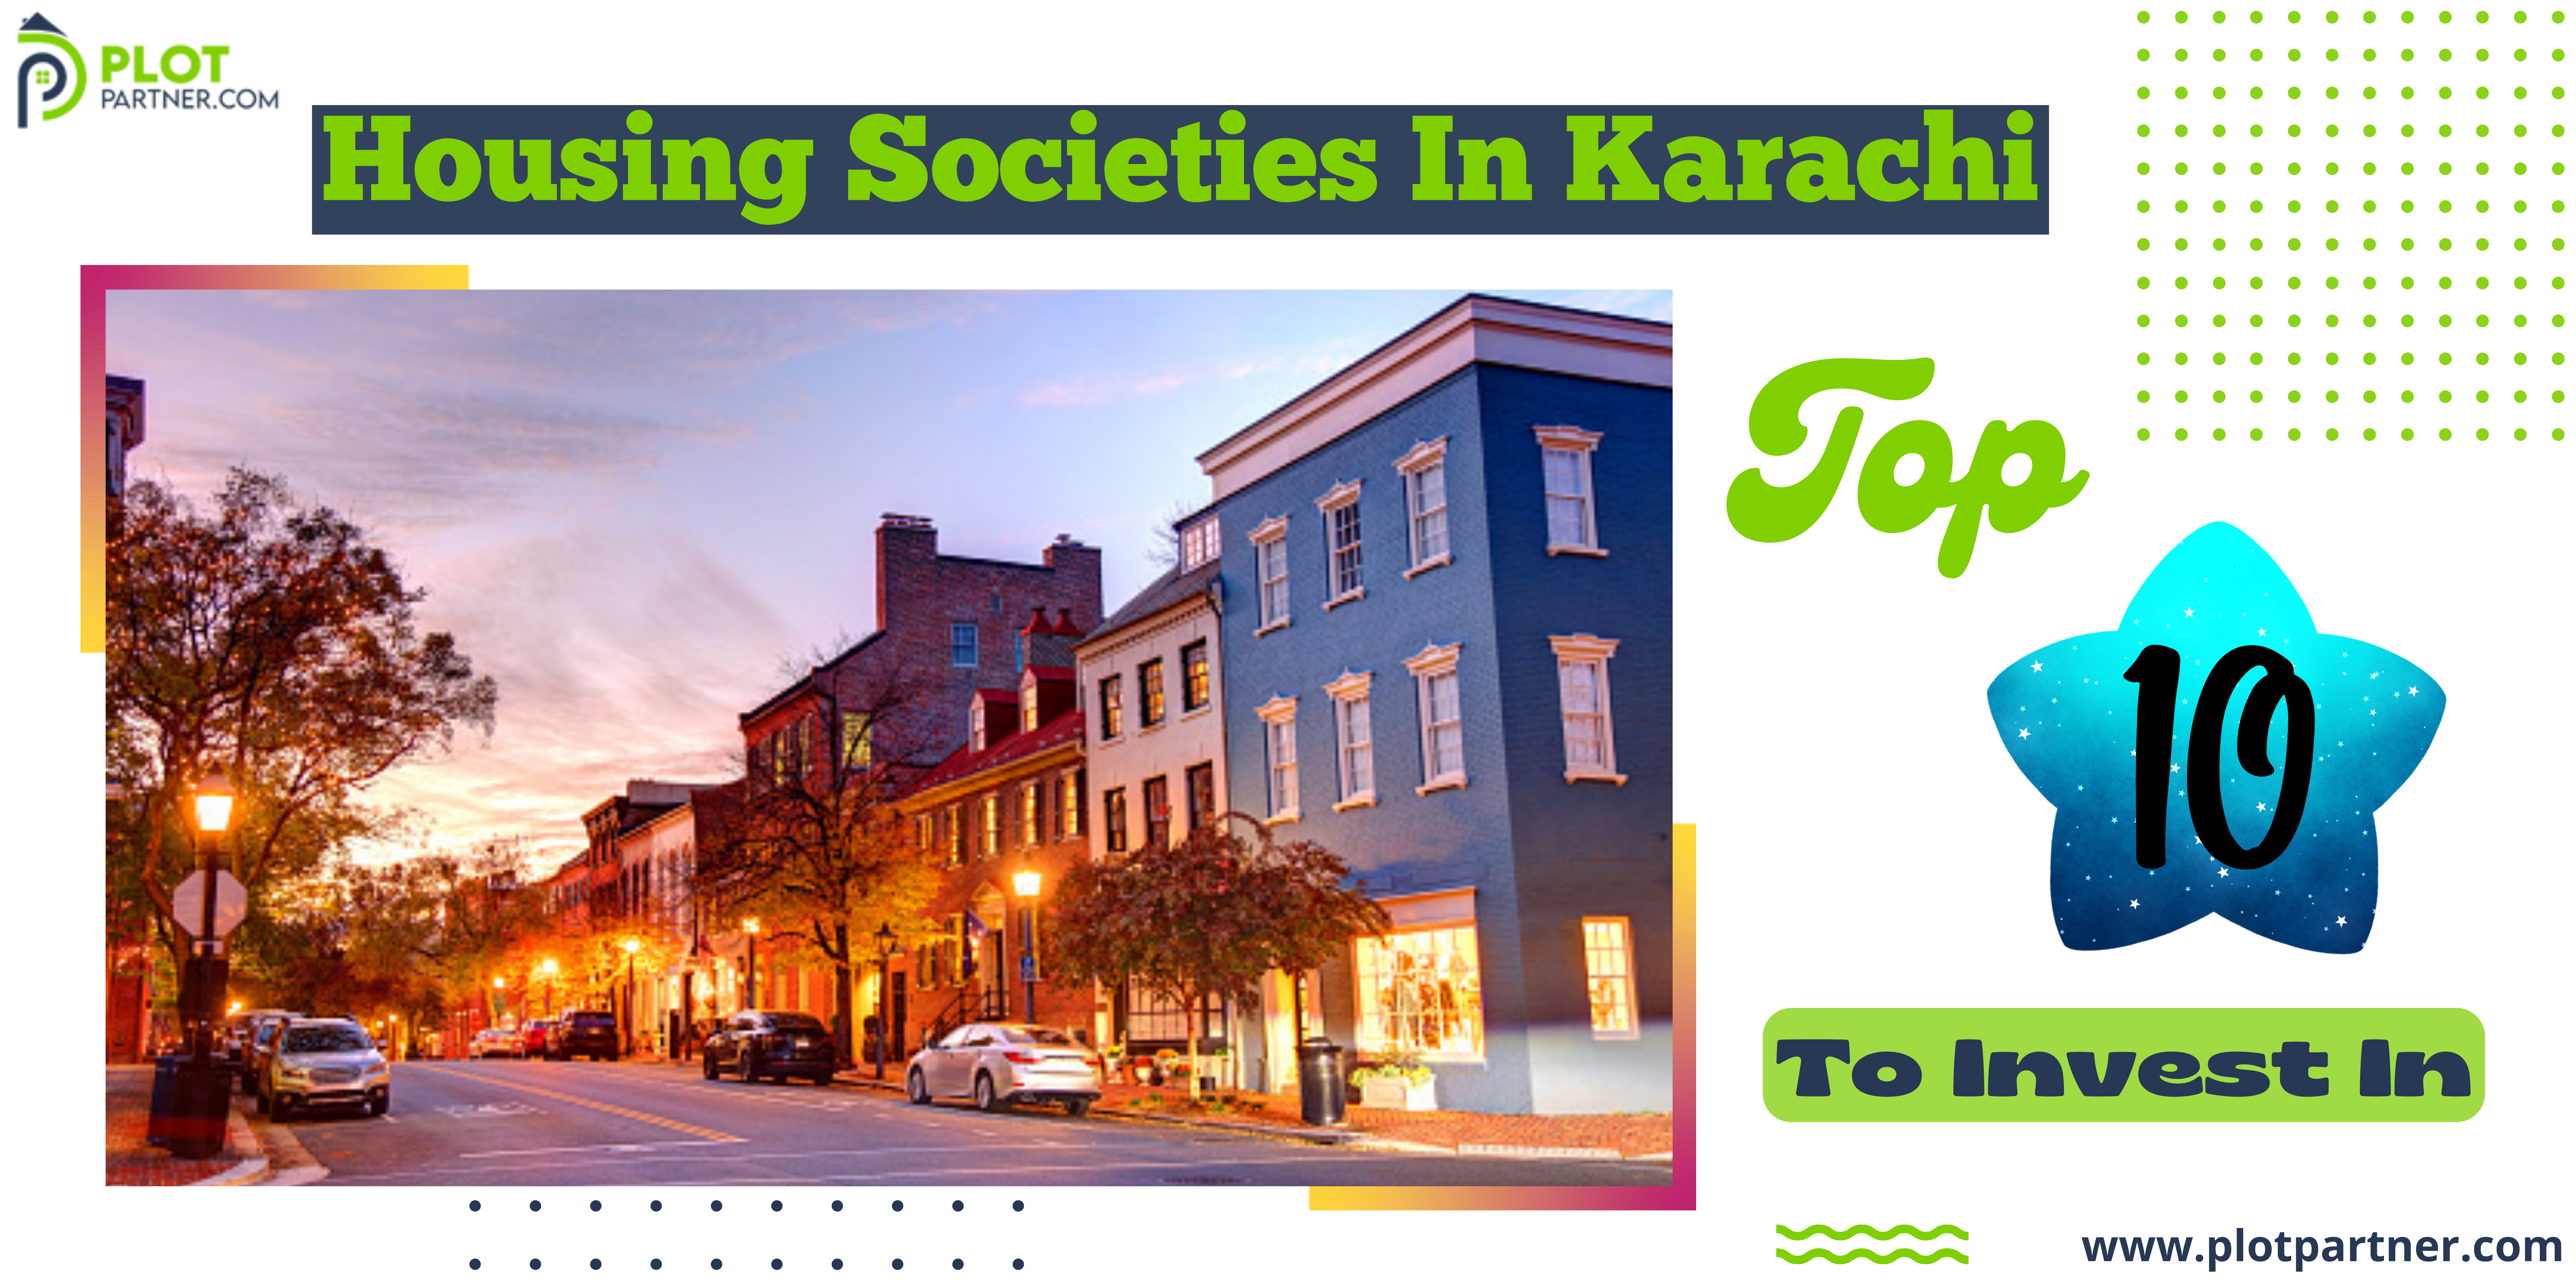 Top 10 Housing Societies in Karachi to Invest